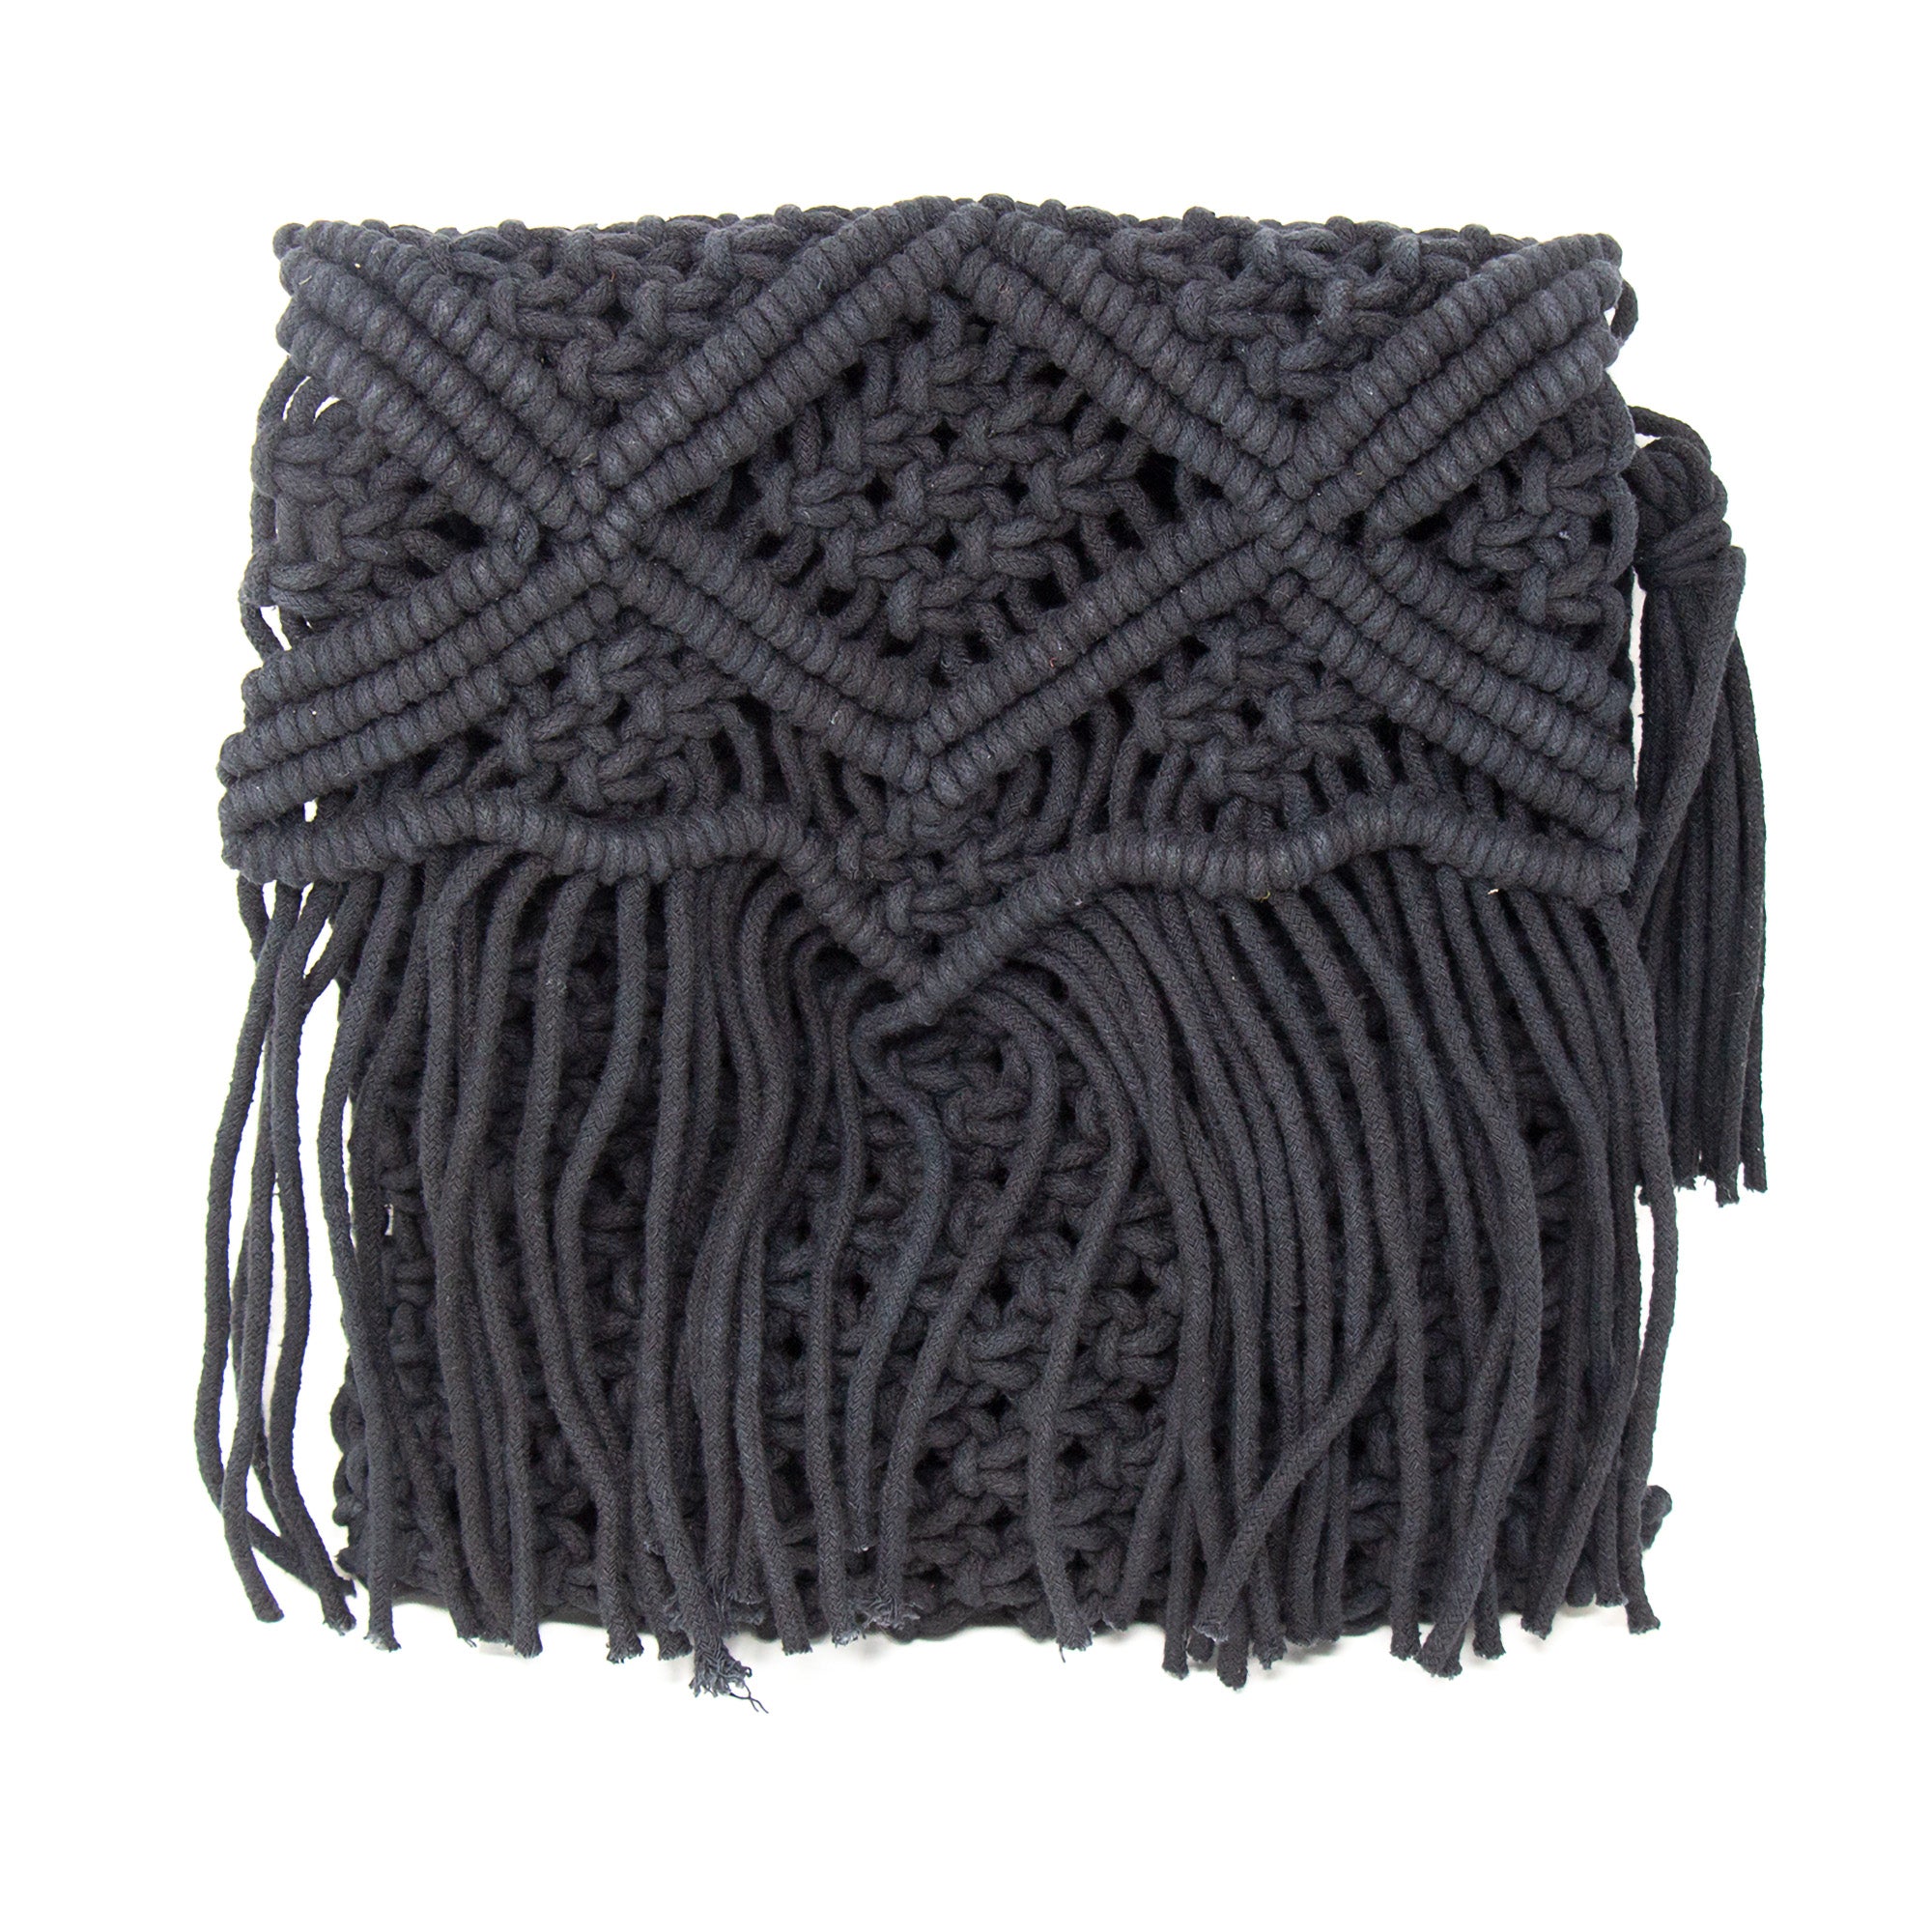 Handmade Boho Macrame Shoulder Bag, Black with Fringe - Global Crafts  Wholesale